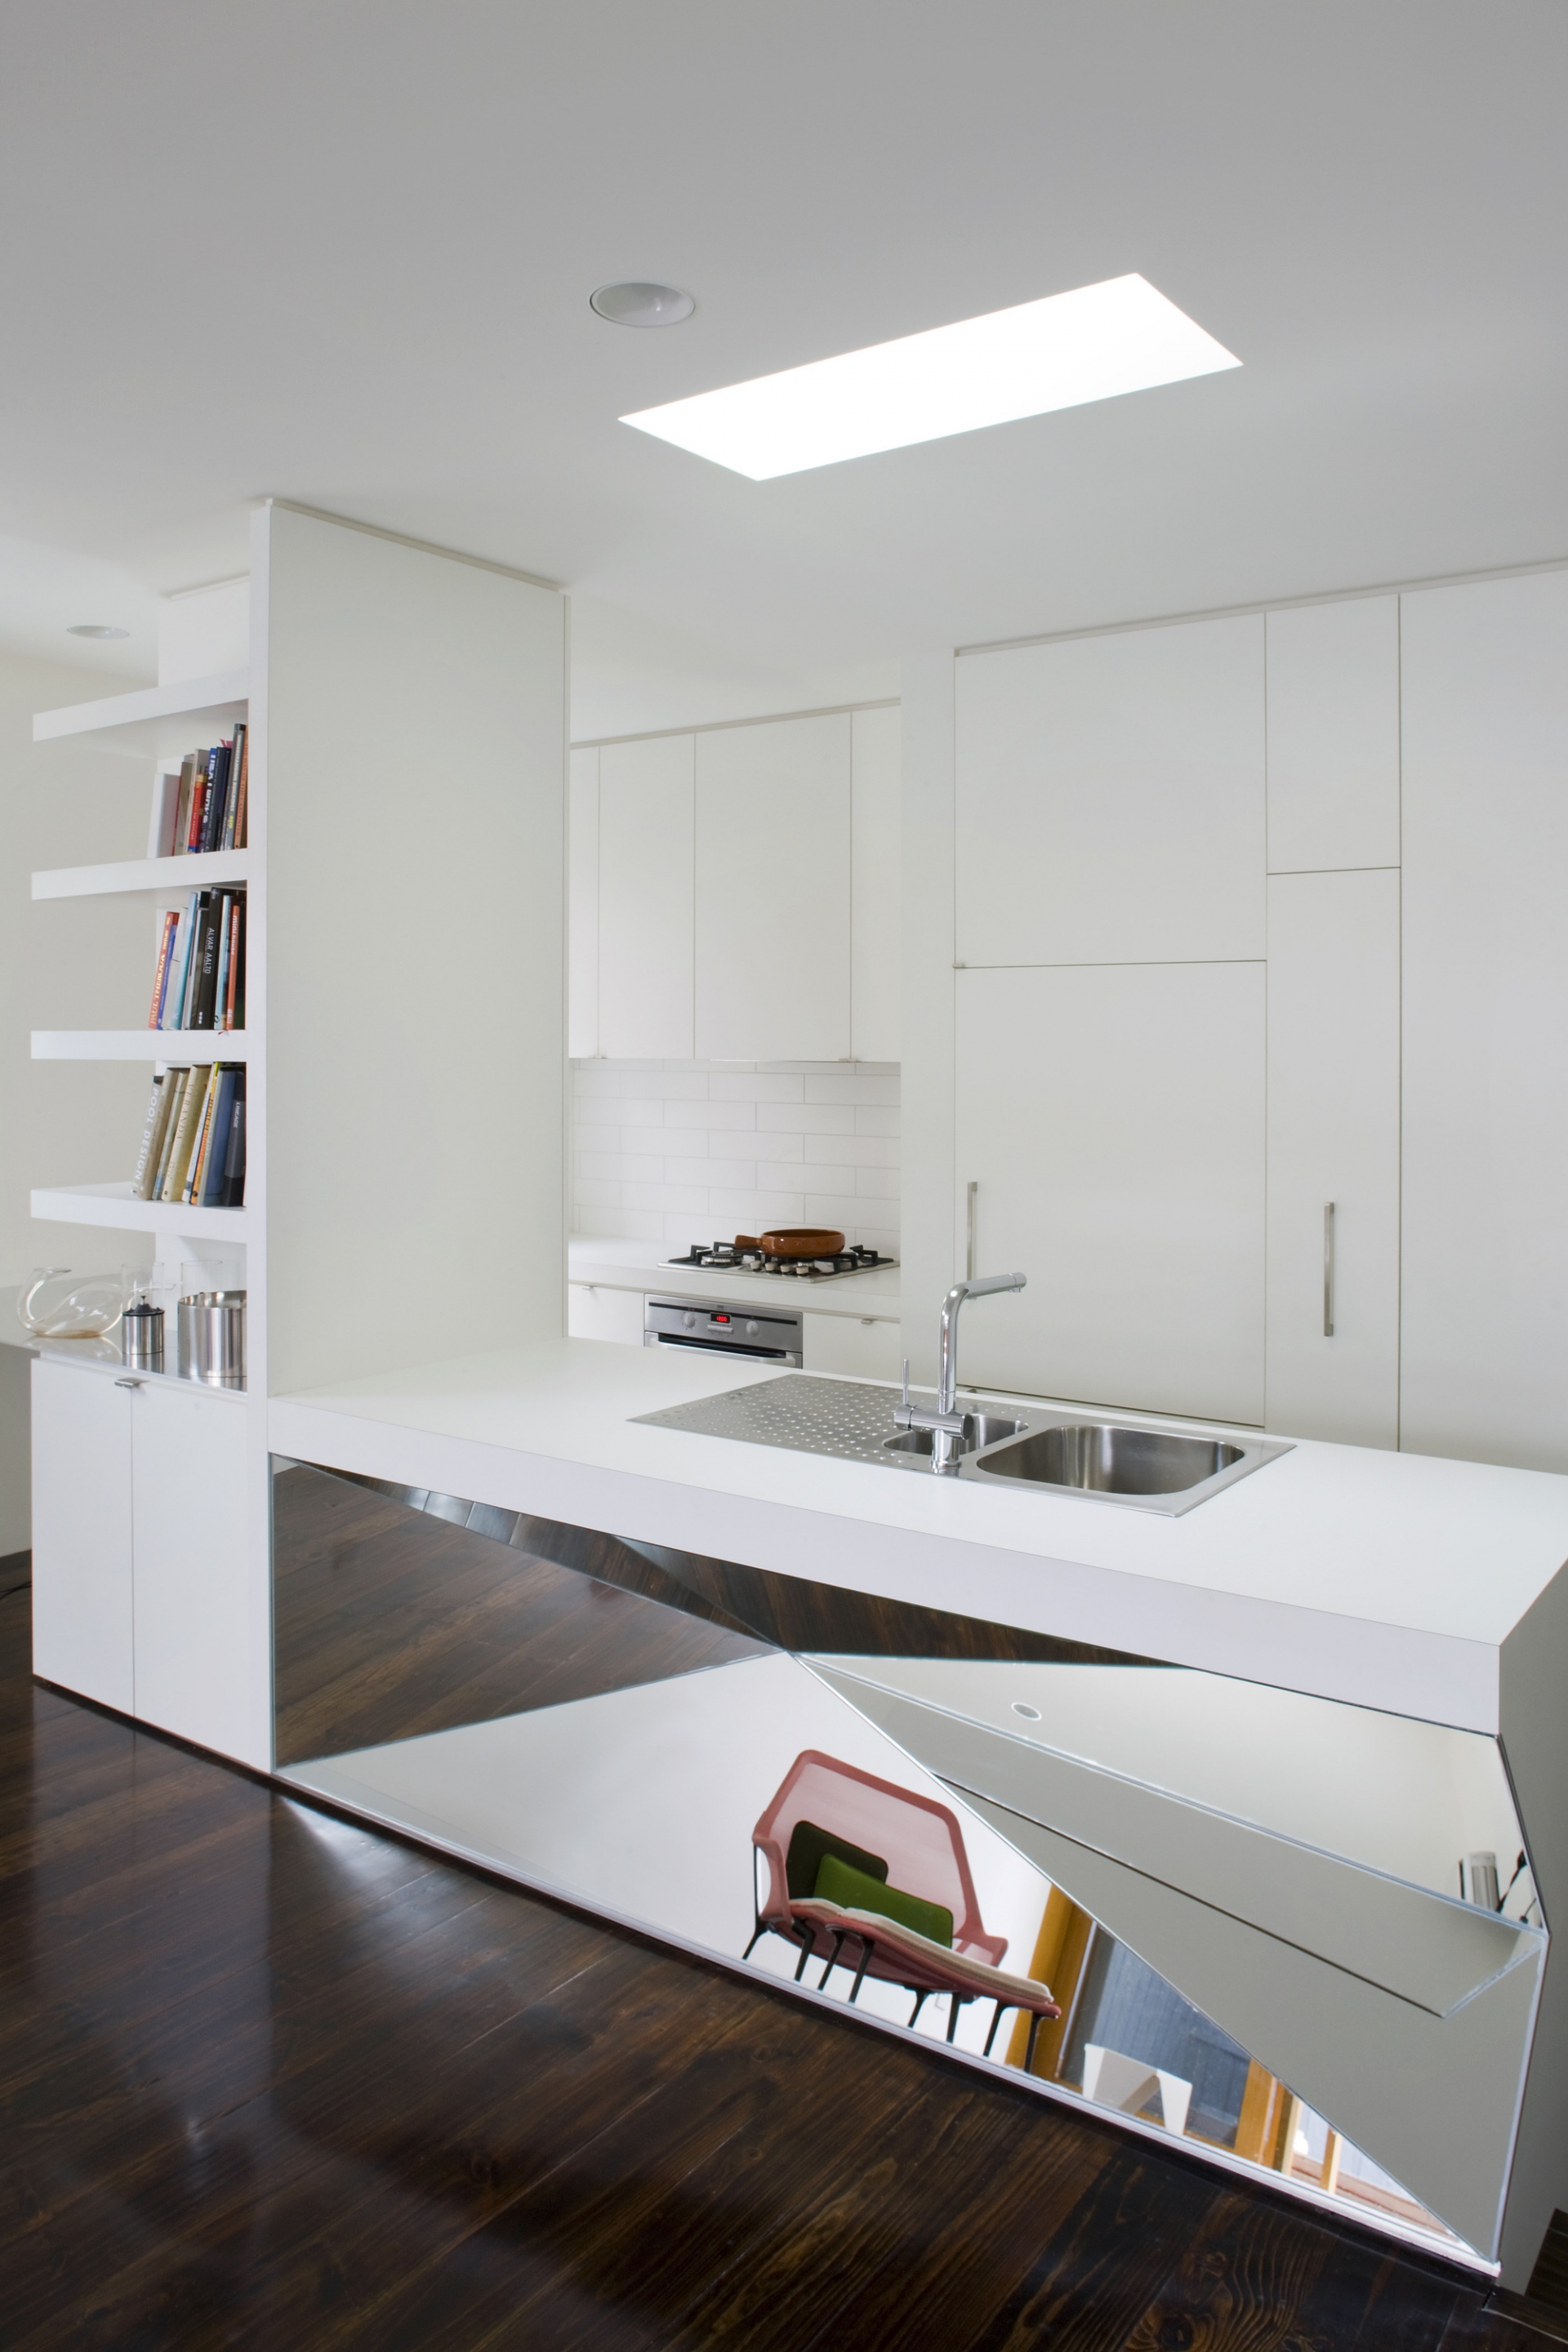 Và cuối cùng, thay vì sử dụng loại gương bằng phẳng, các kiến trúc sư đã chọn lựa mẫu gương hình học độc đáo để tạo điểm nhấn cho không gian lấy sắc trắng làm chủ đạo. Đây cũng chính là phòng bếp của K2 House (Úc) - công trình xây dựng được đánh giá rất cao trên các tạp chí kiến trúc.